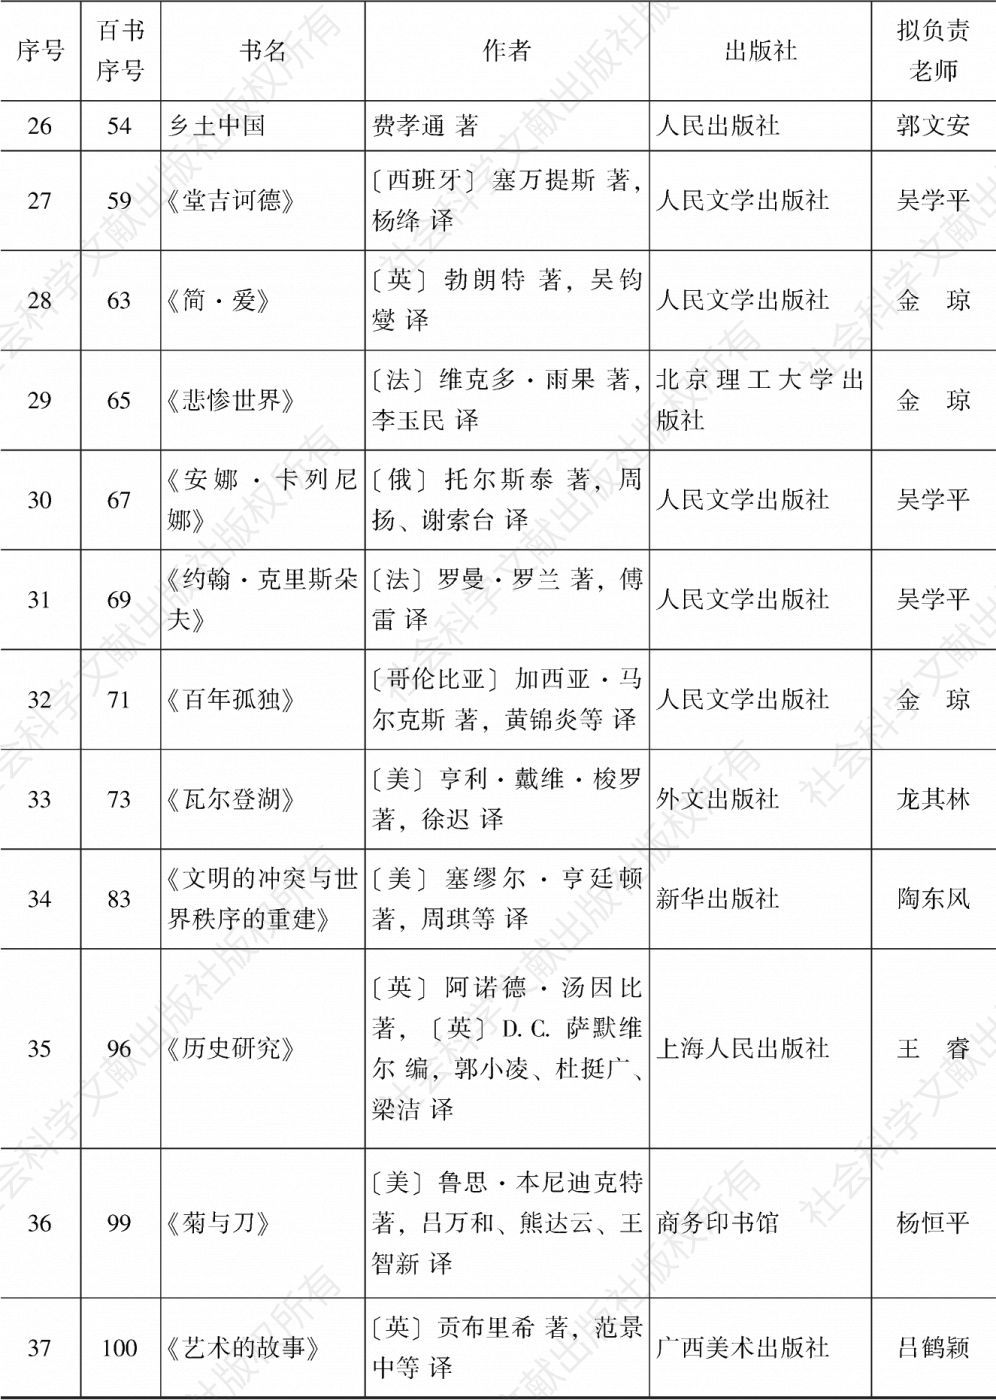 表1 广州大学人文学院“经典百书”推荐目录（2018年）-续表